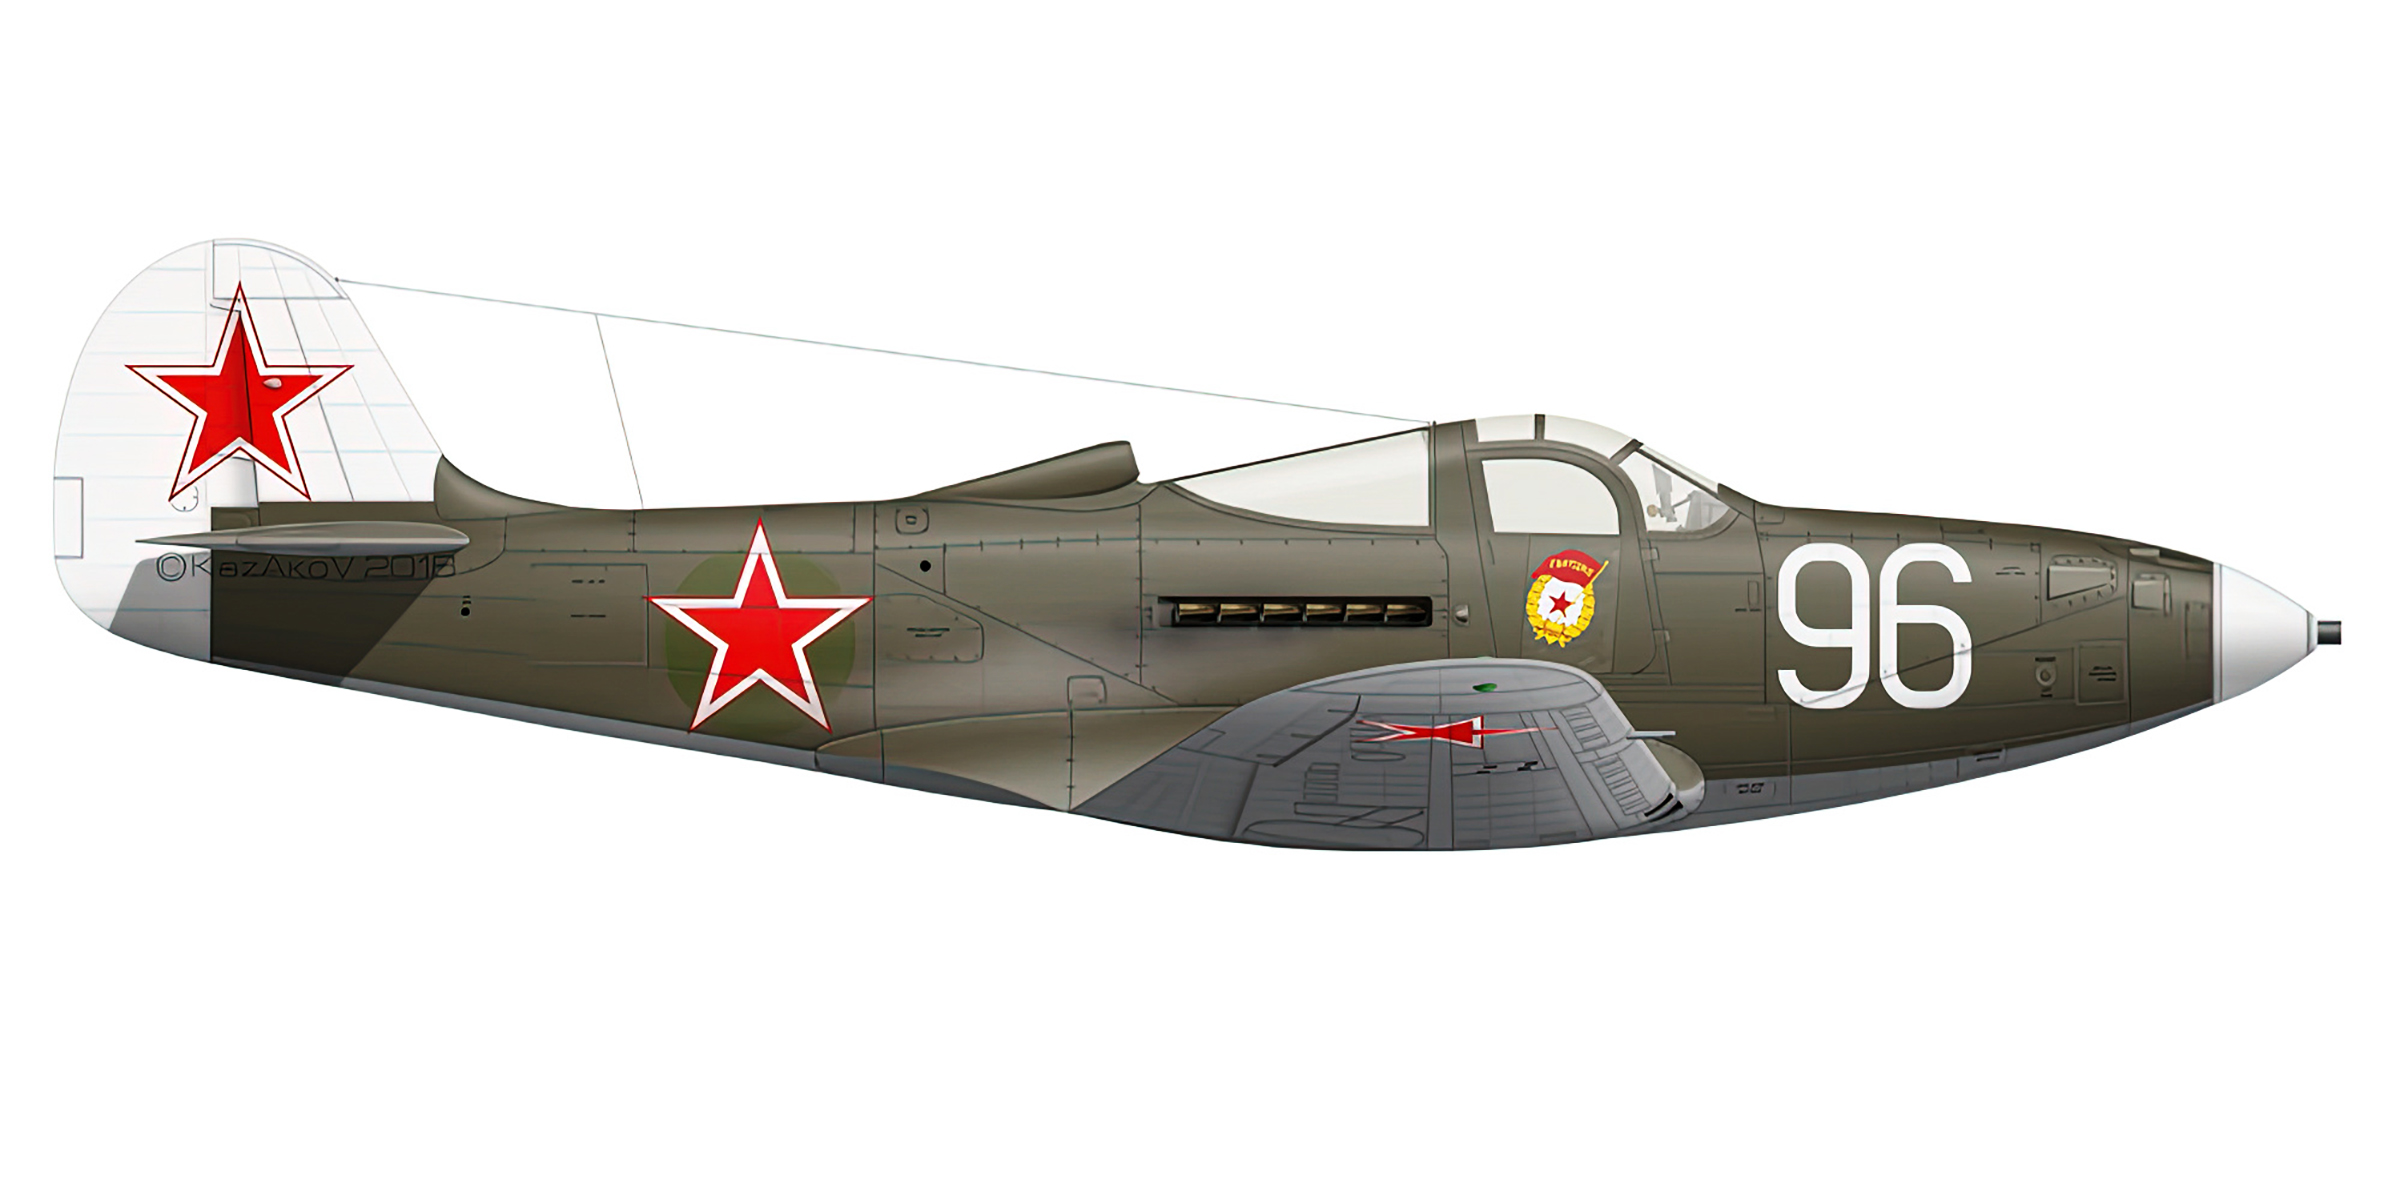 Bell P 39 Airacobra 102GvIAP 7IAK White 96 Major AG Pronin Levashovo Russia 1943 0A